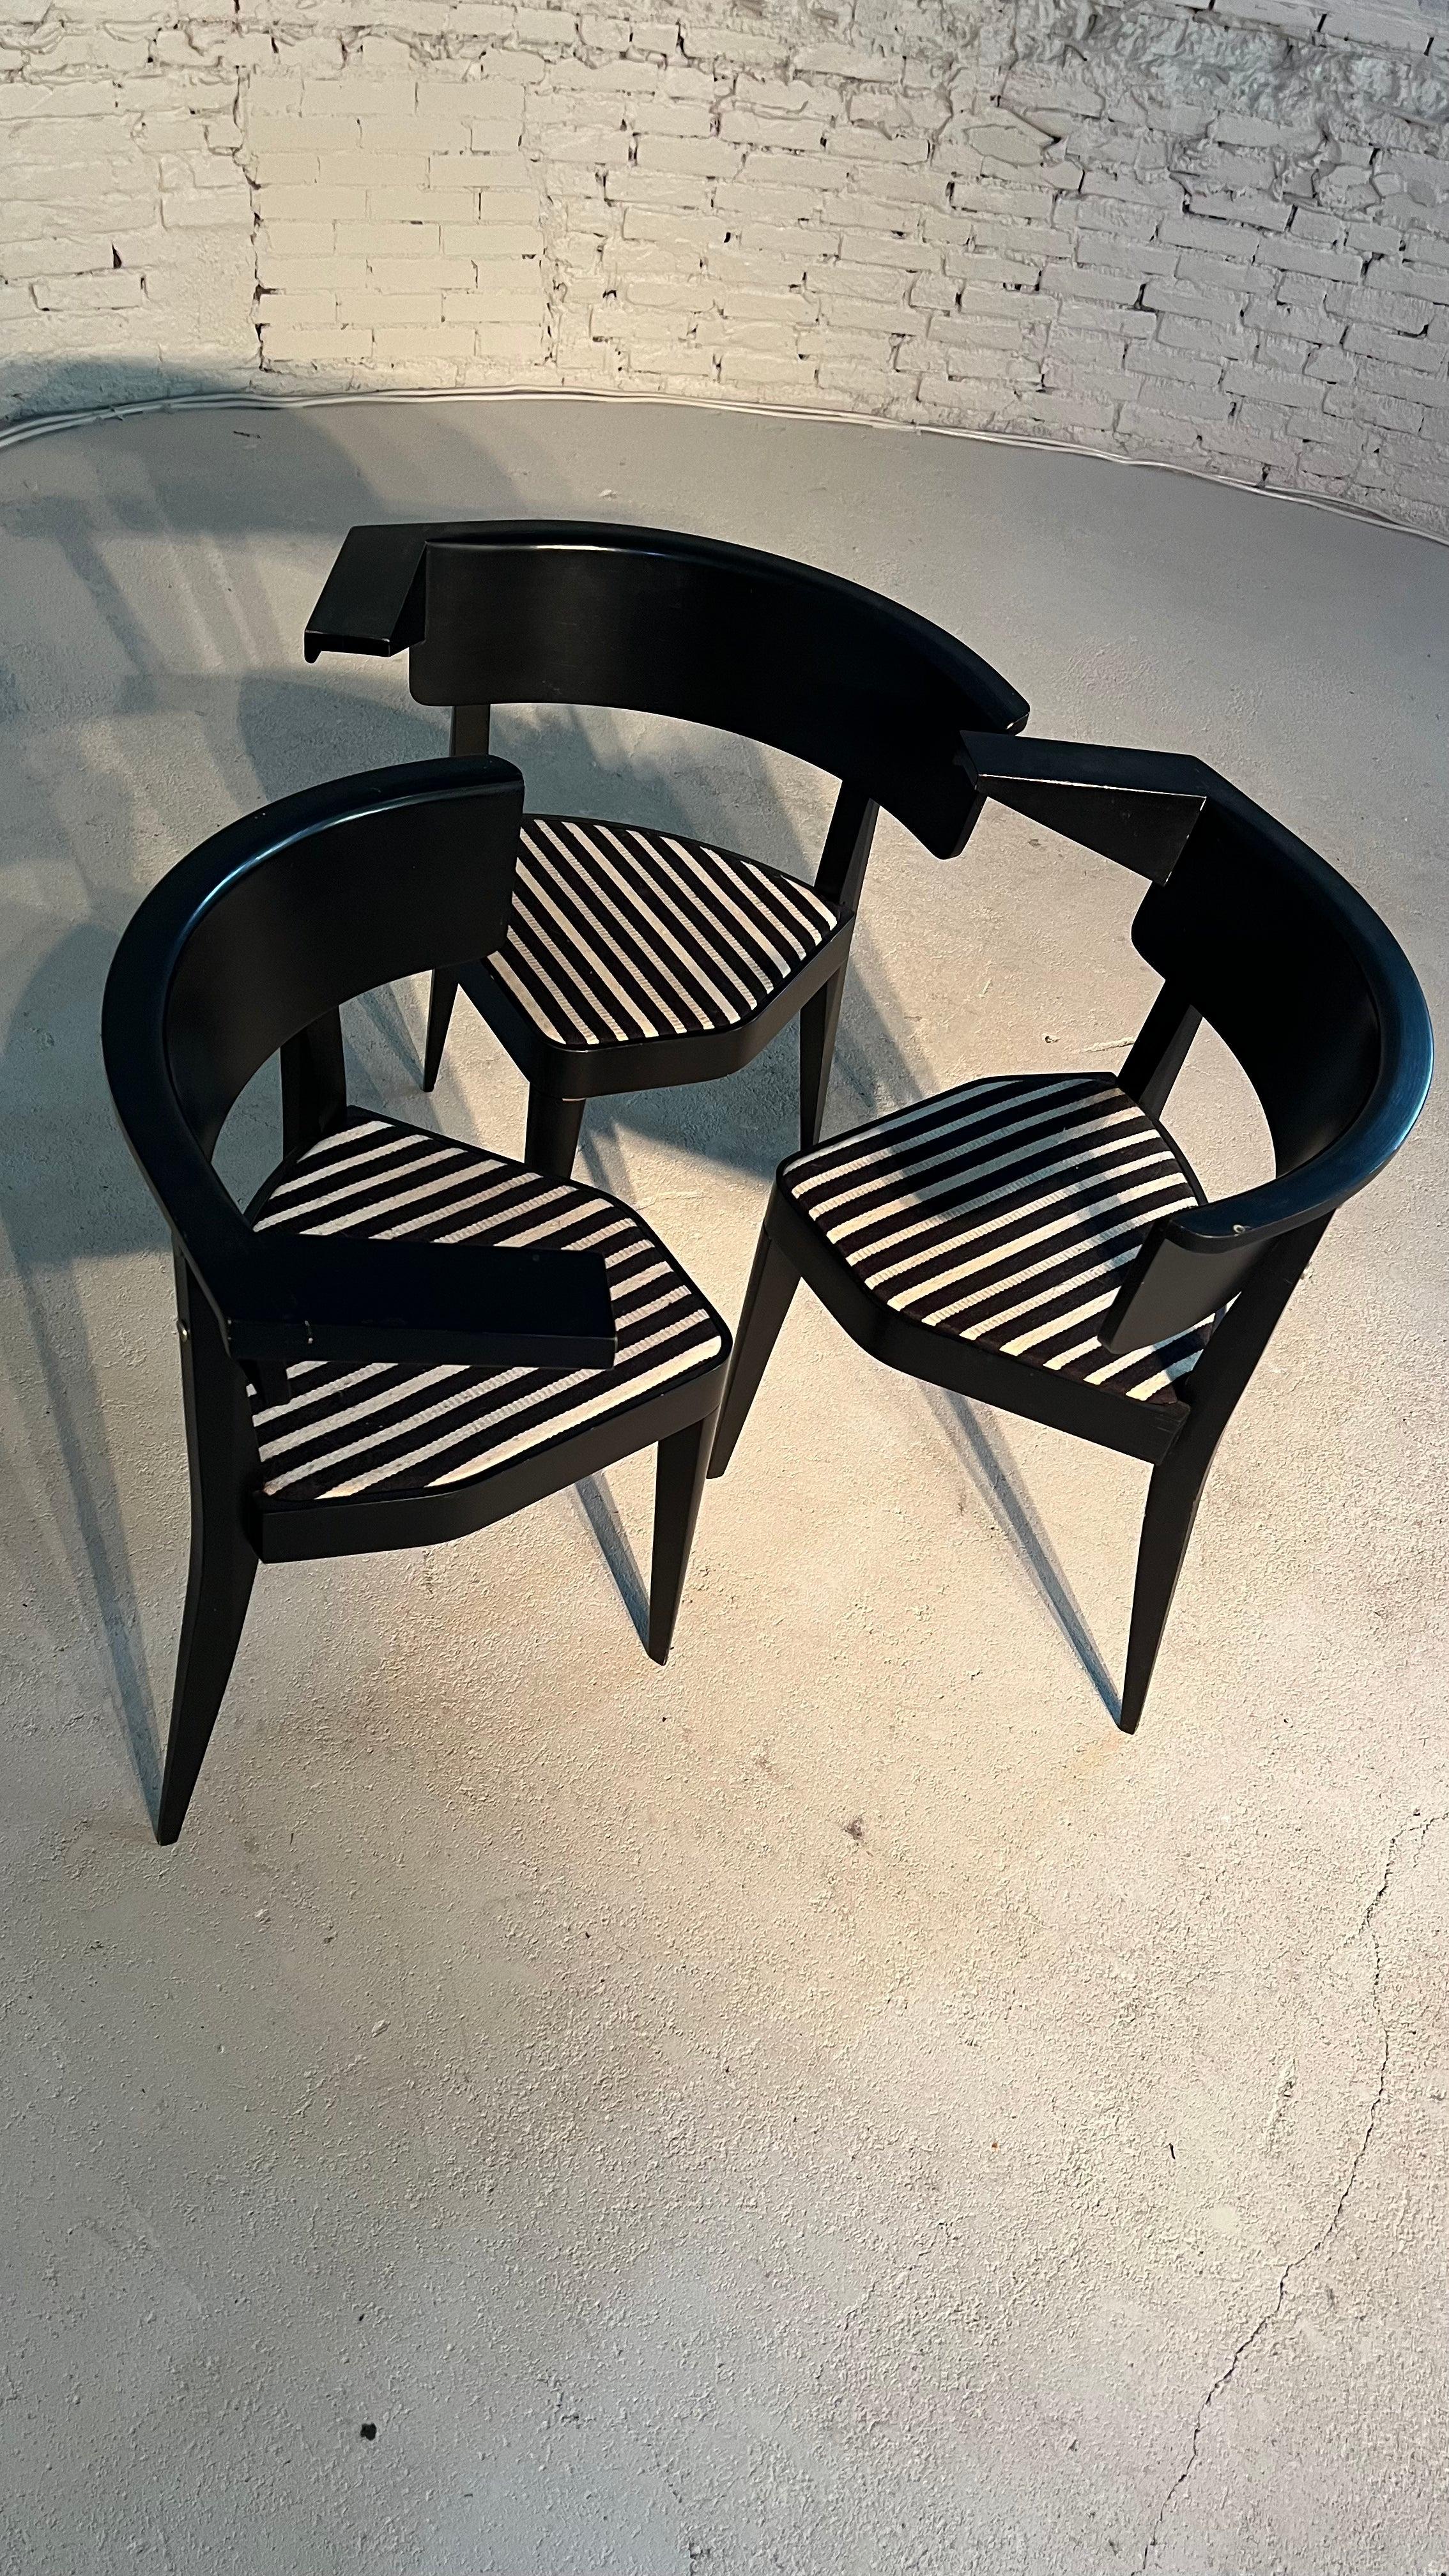 La chaise asymétrique B1, conçue par Stefan Wewerka, peut être considérée comme représentative de ce travail de collaboration. Ses précurseurs sont des sculptures de chaises qui aboutissent à un produit offrant de multiples possibilités d'assise,